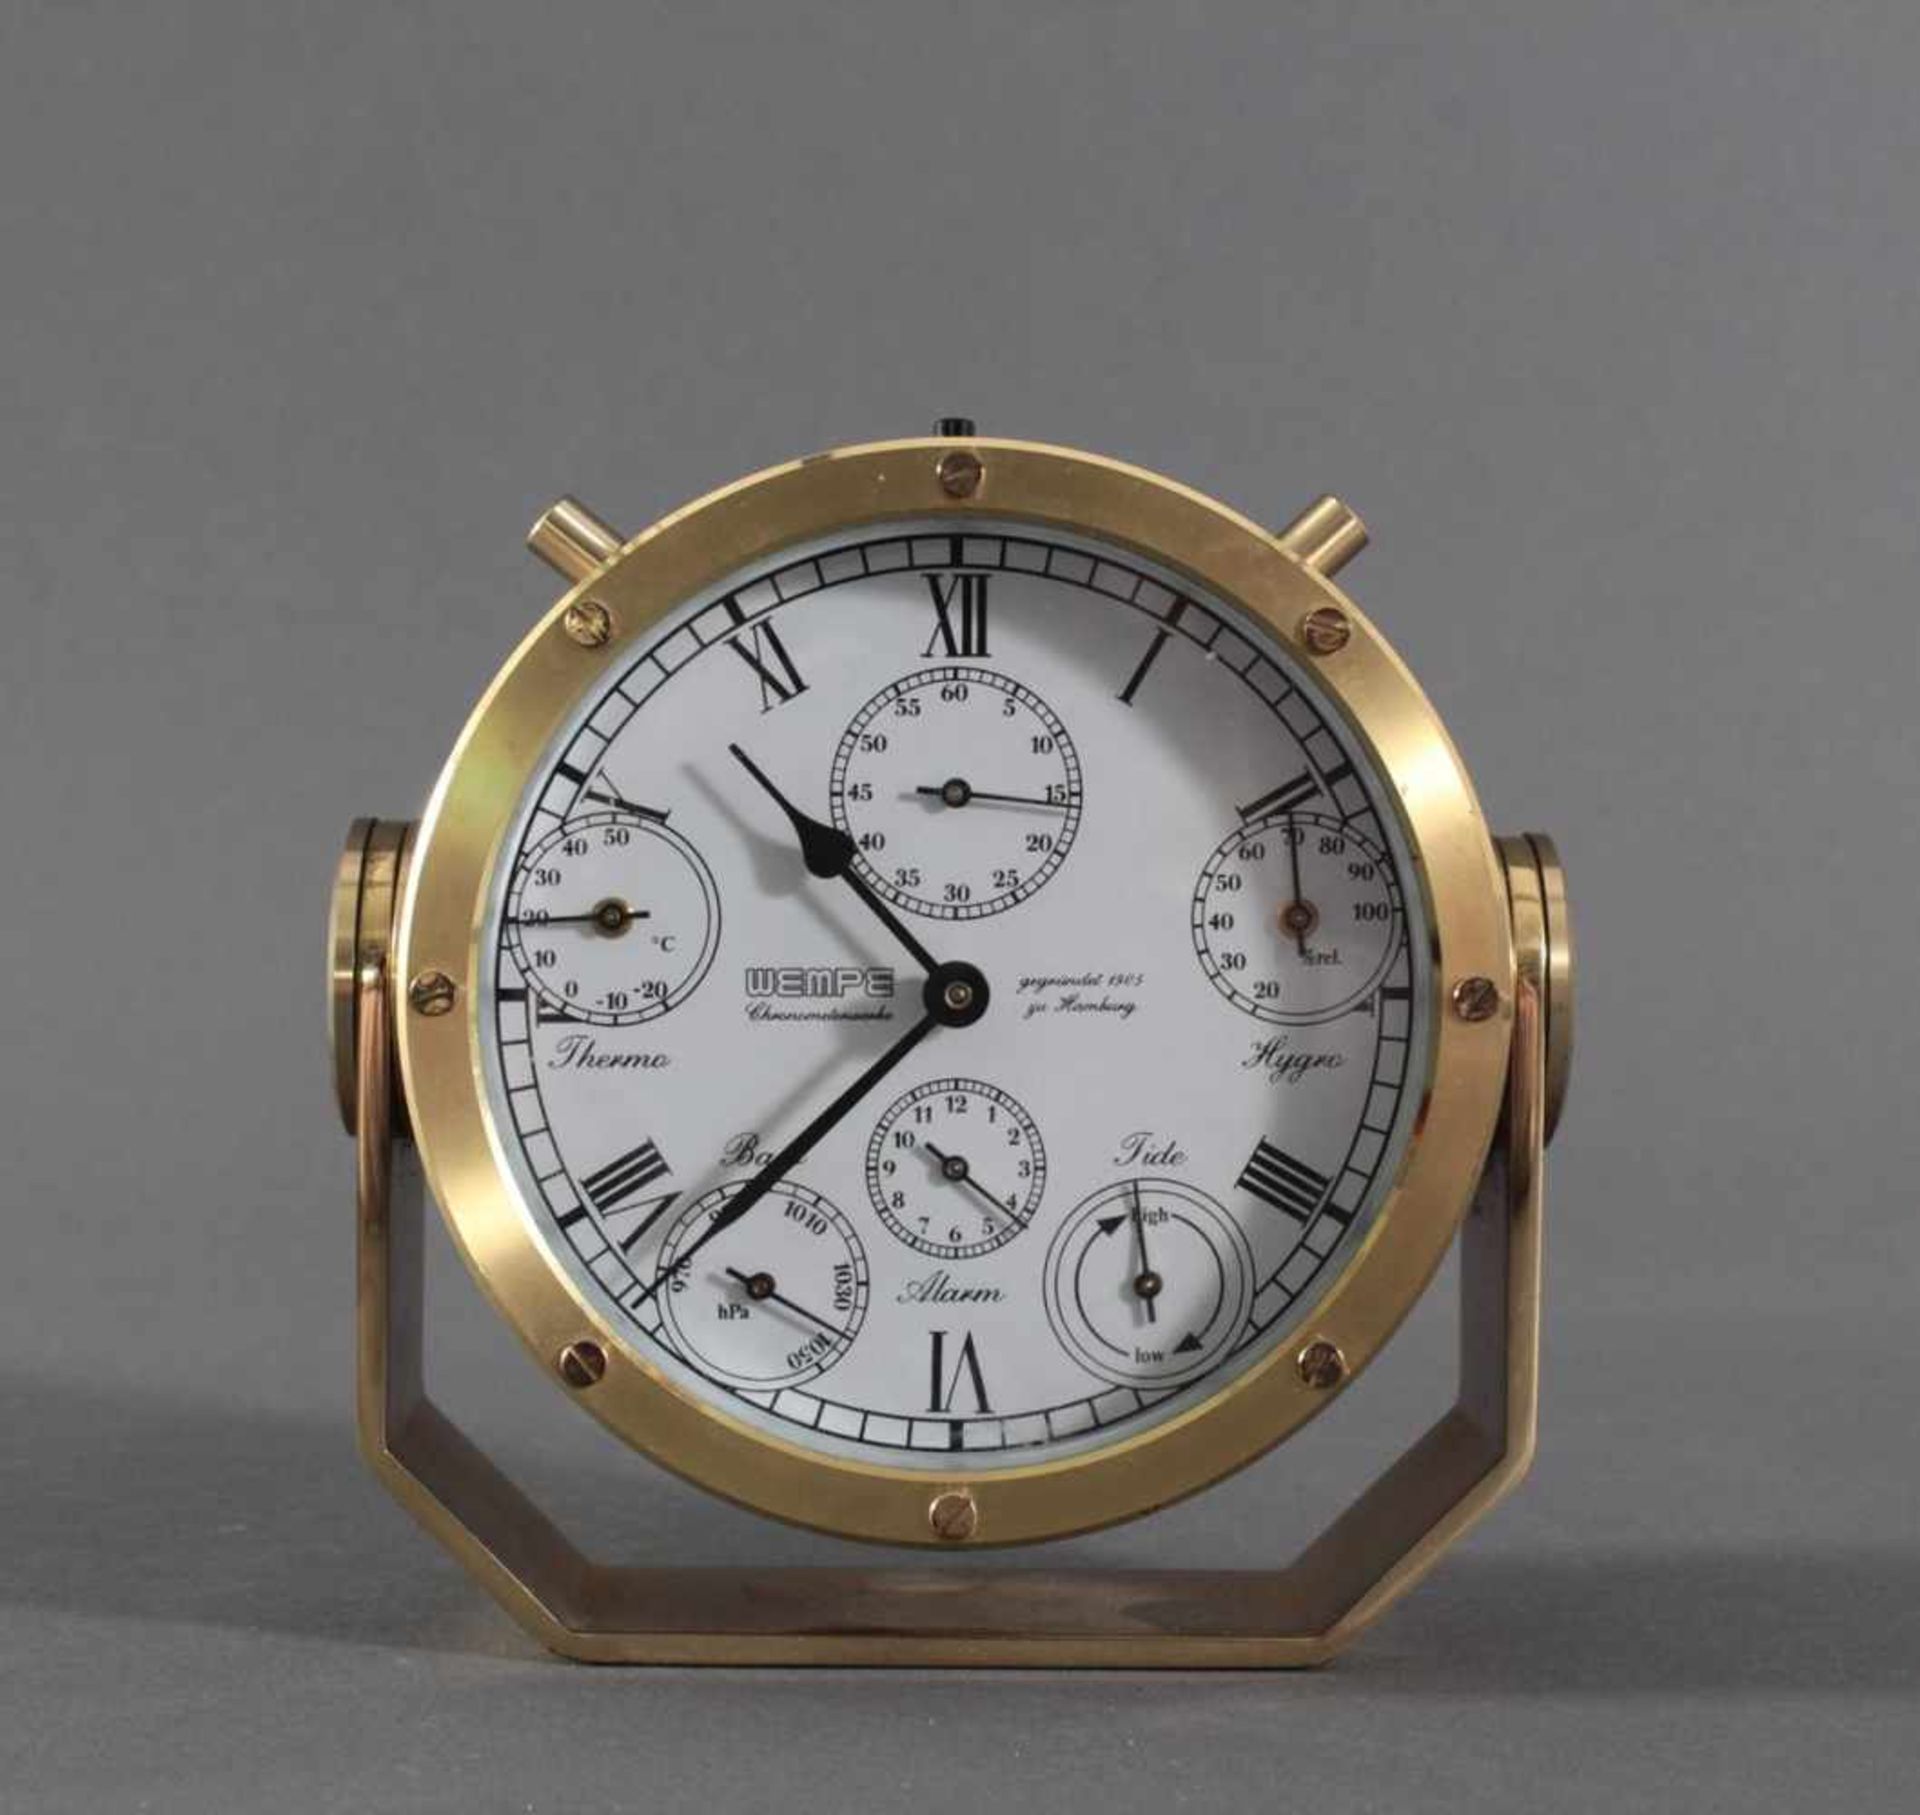 Wempe-Schiffsuhr, Chronometerwerke HamburgSchwenkbares Messinggehäuse, römisches Zifferblatt mit